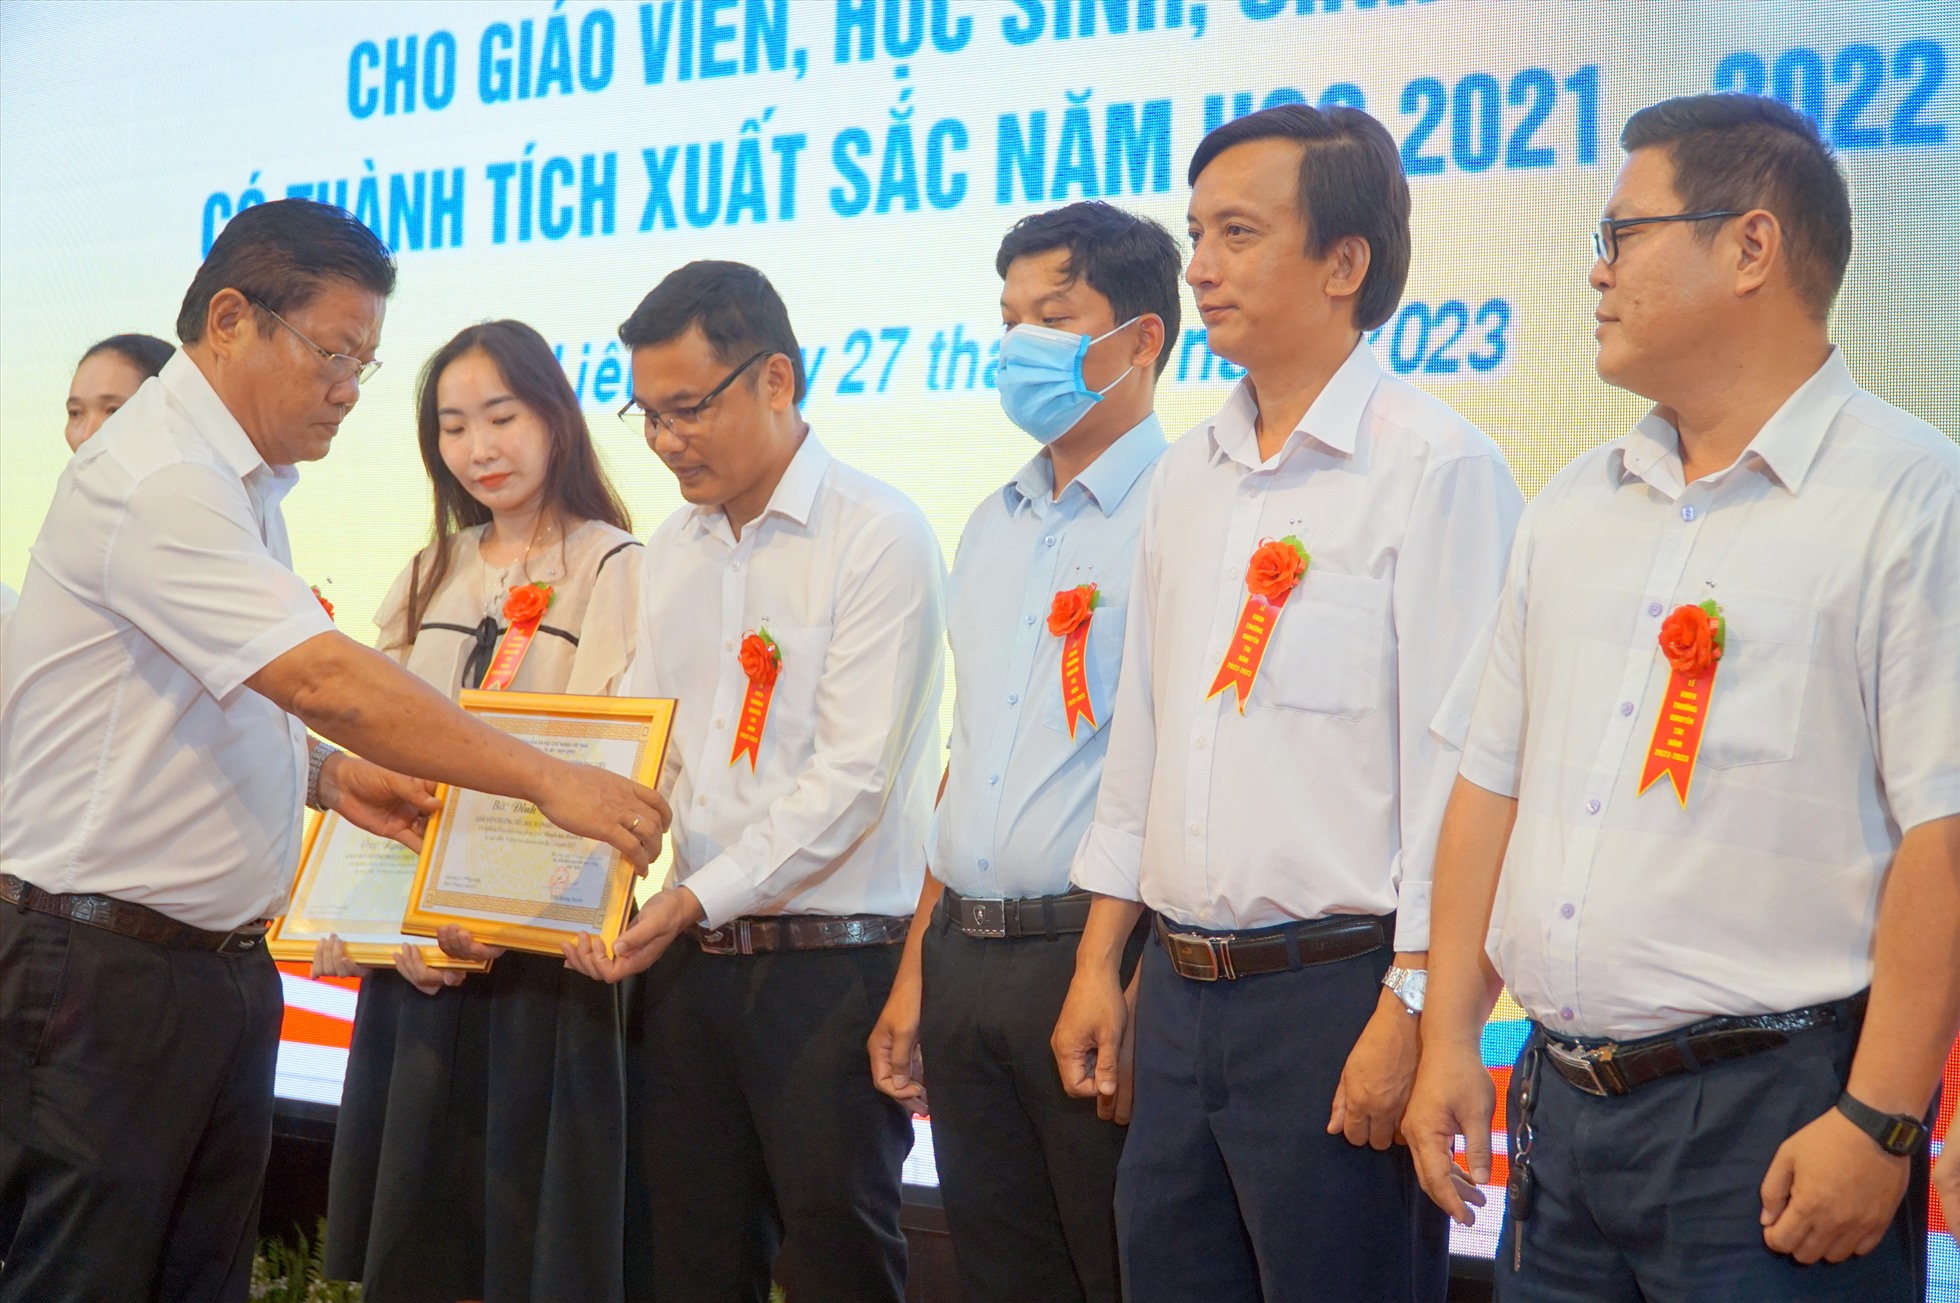 Ông Trần Hoàng Duyên, Chủ tịch Hội khuyến học tỉnh Bạc Liêu trao bằng khen cho giáo viên dạy gỏi cấp tỉnh. Ảnh: Nhật Hồ